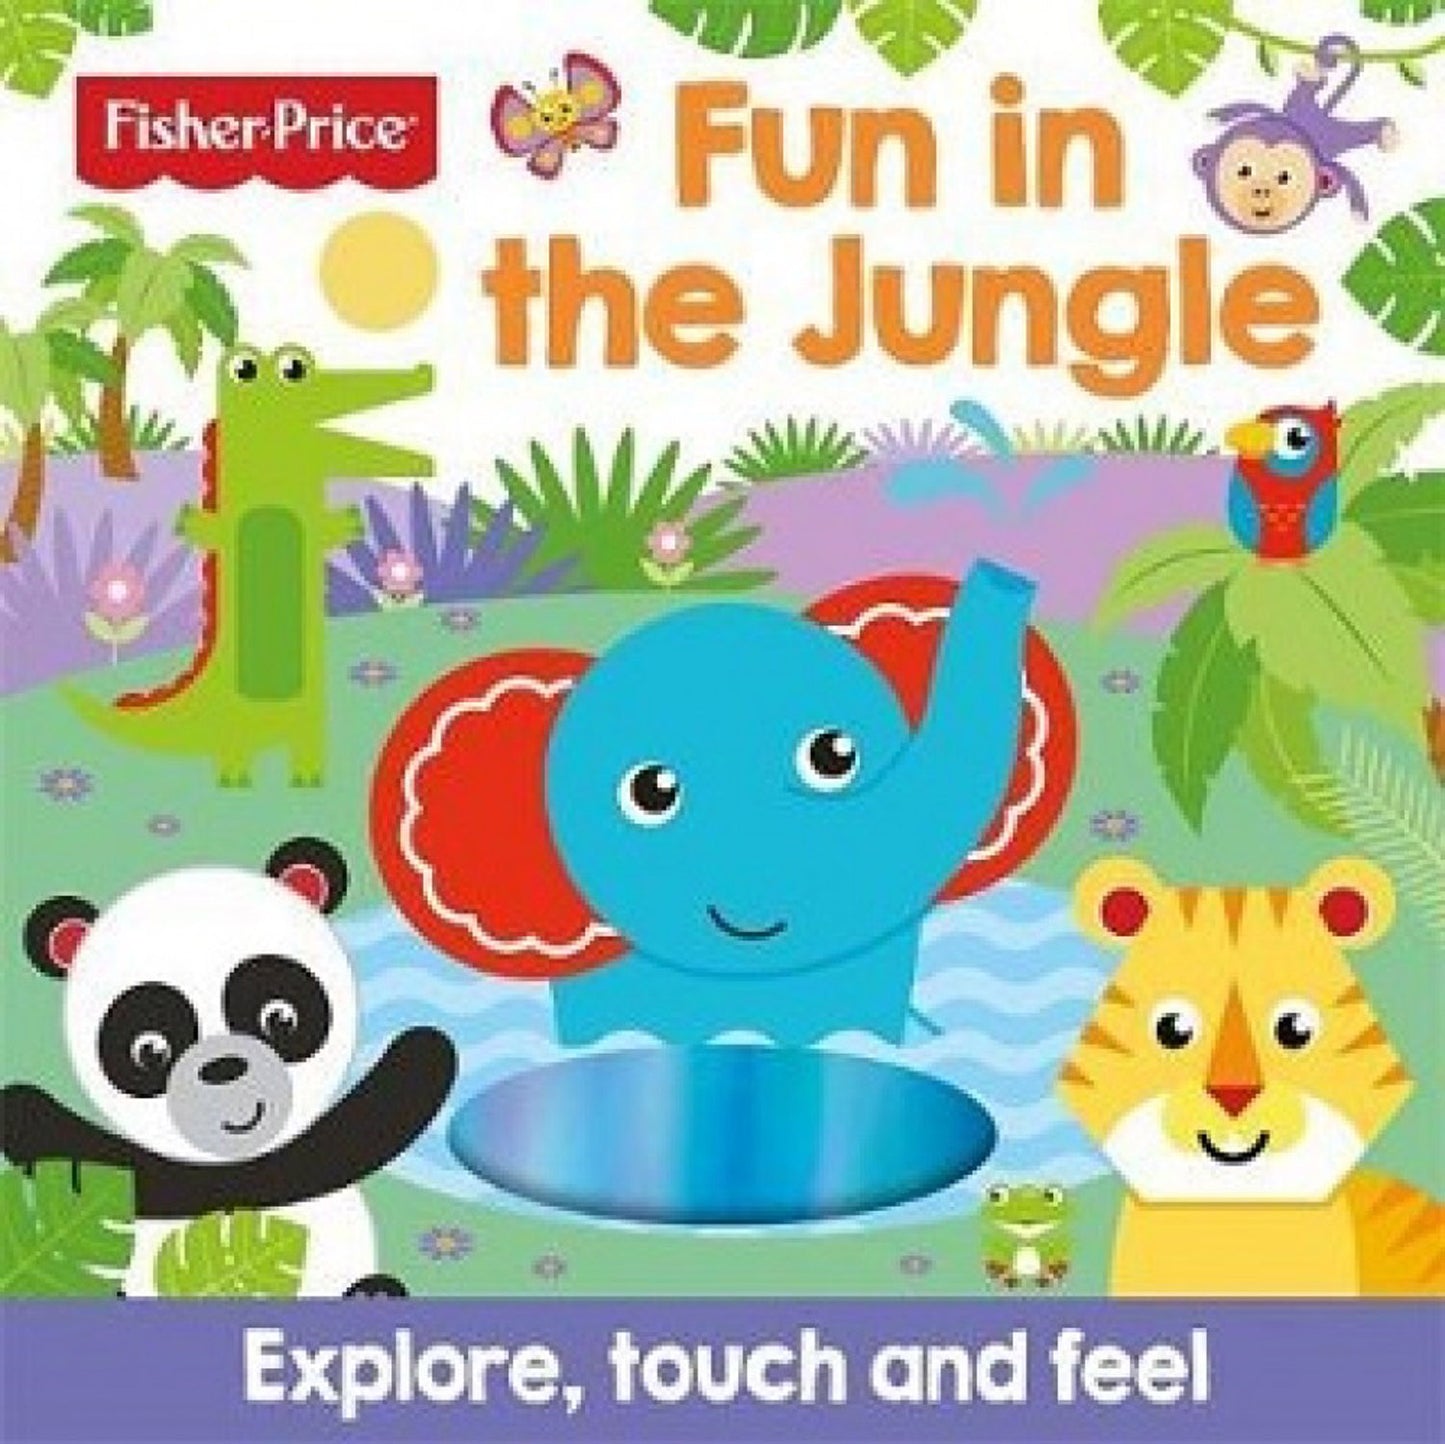 "Fisher-Price Fun in the Jungle"